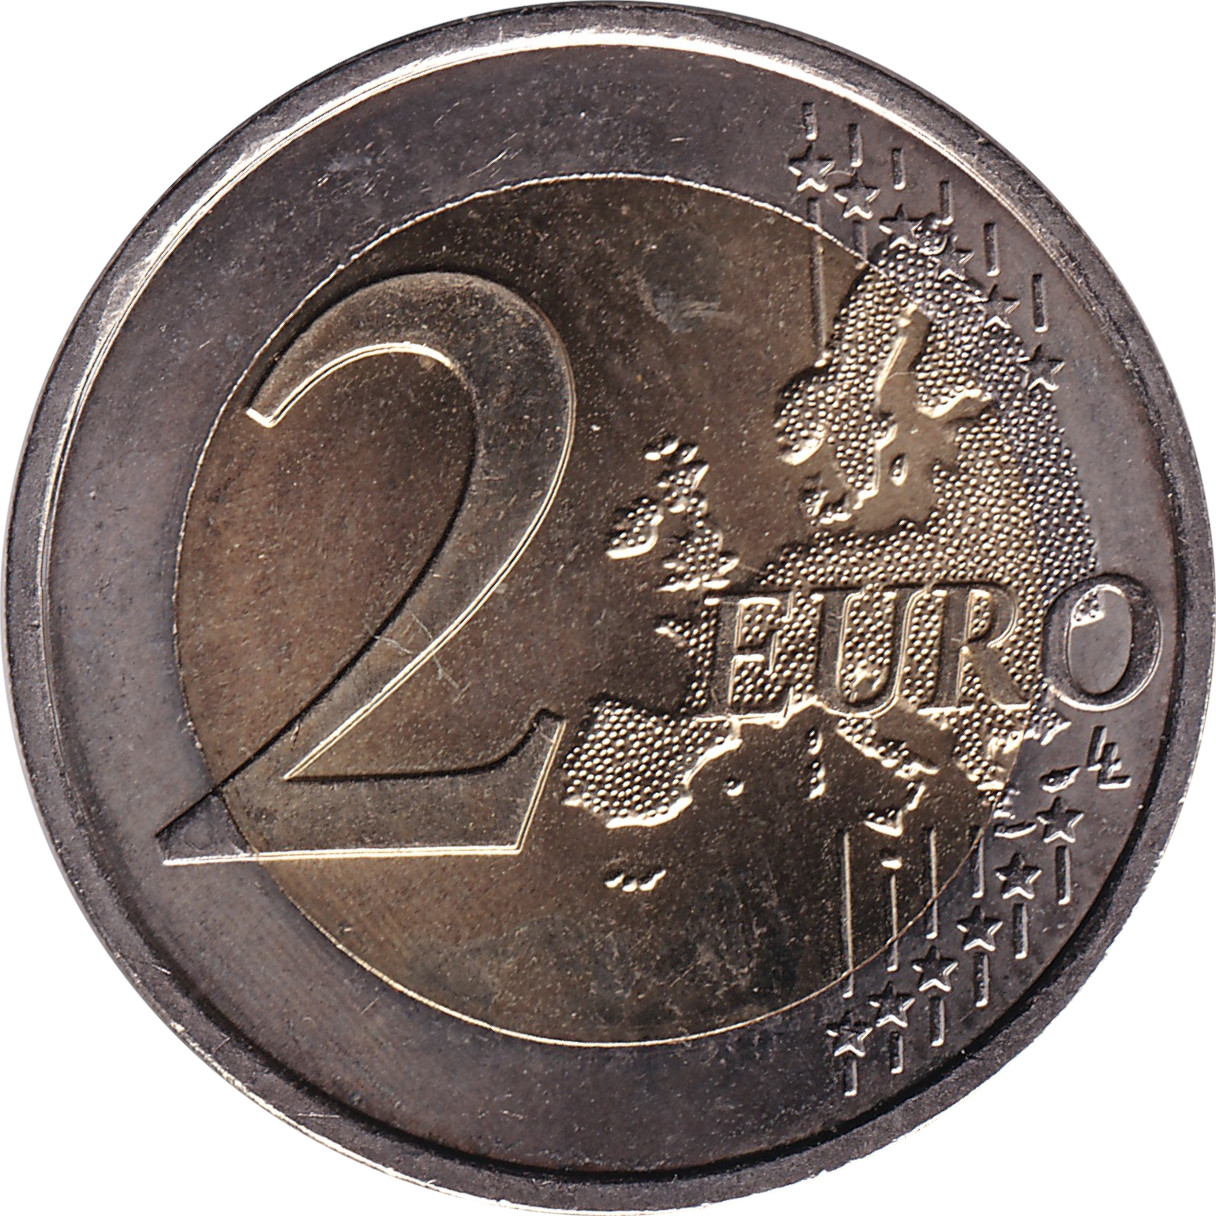 2 euro - Traité de Rome - 50 ans